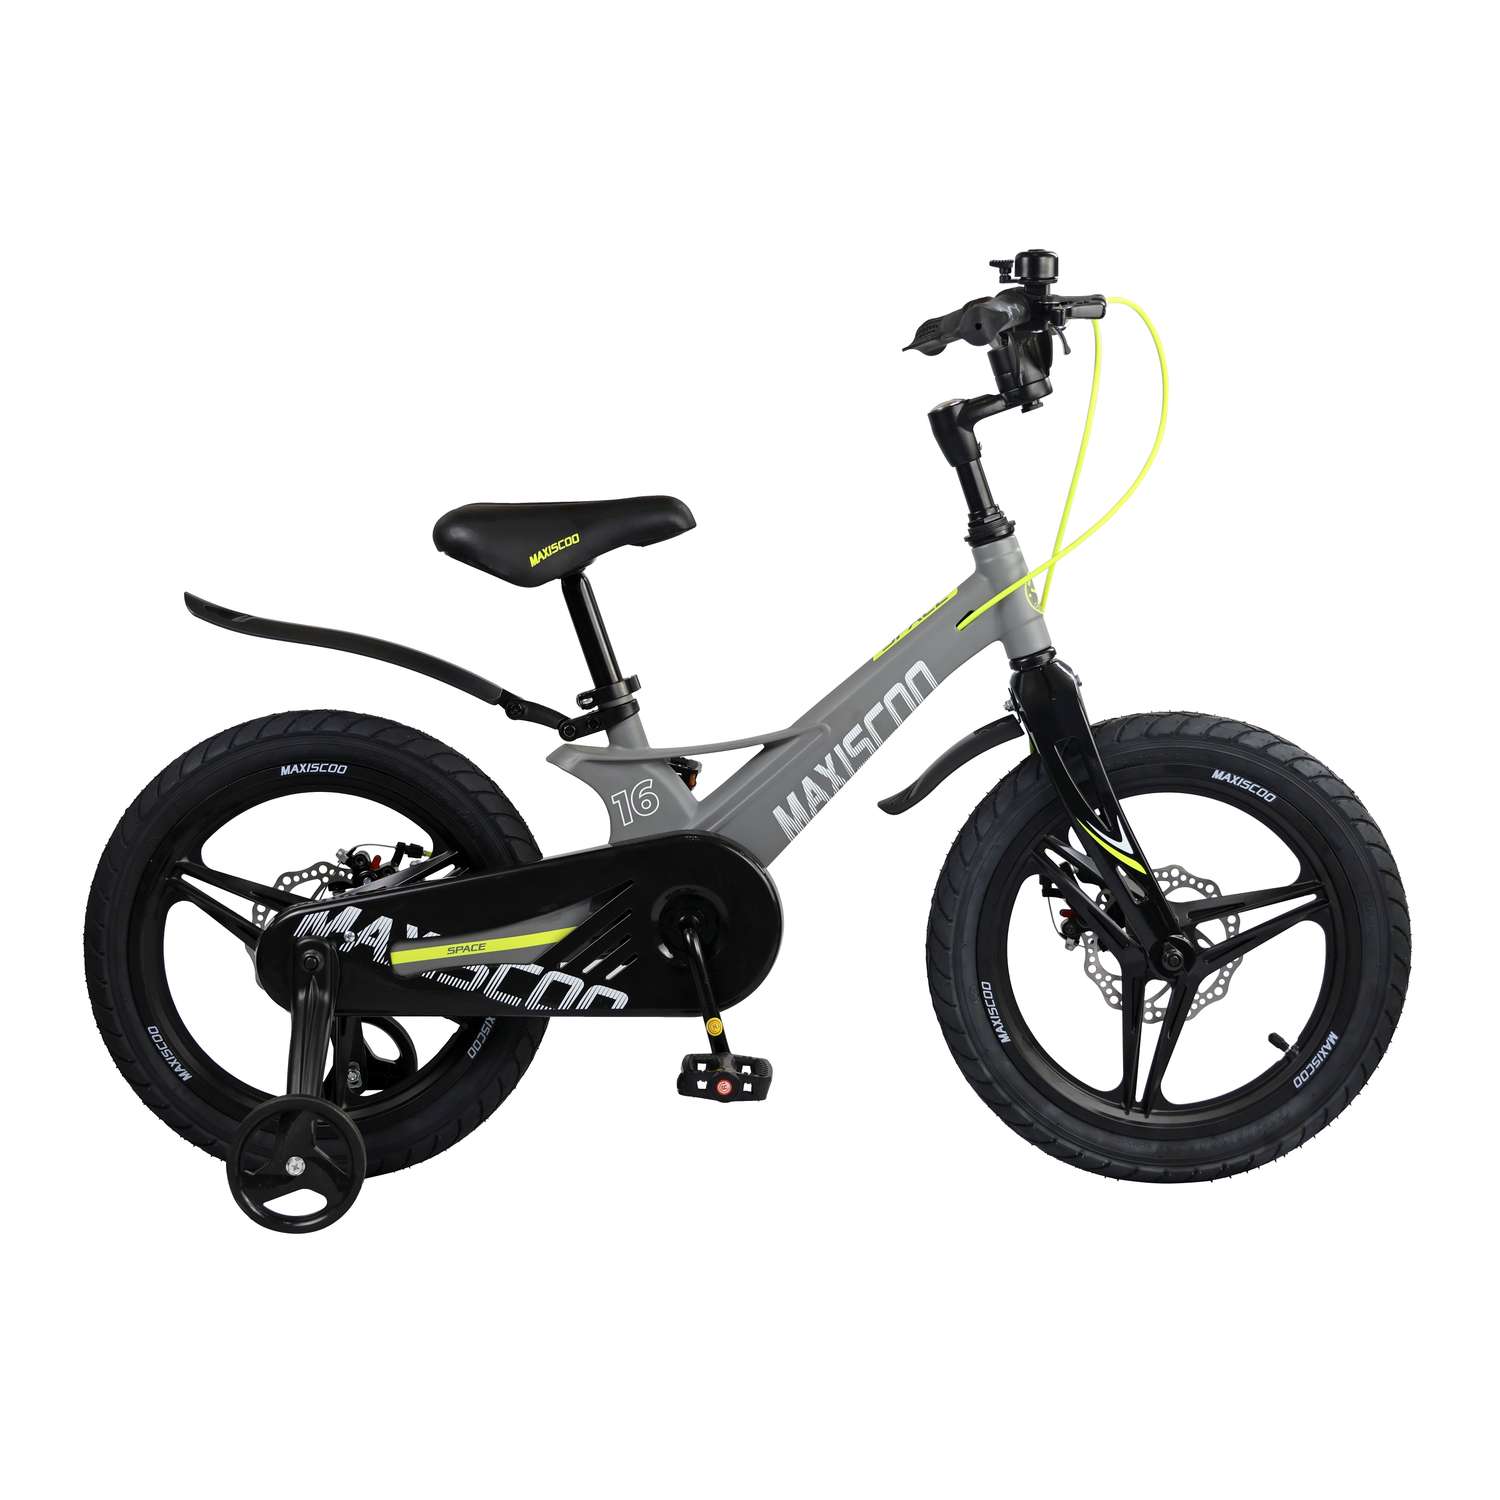 Детский двухколесный велосипед Maxiscoo Space делюкс 16 серый матовый - фото 1